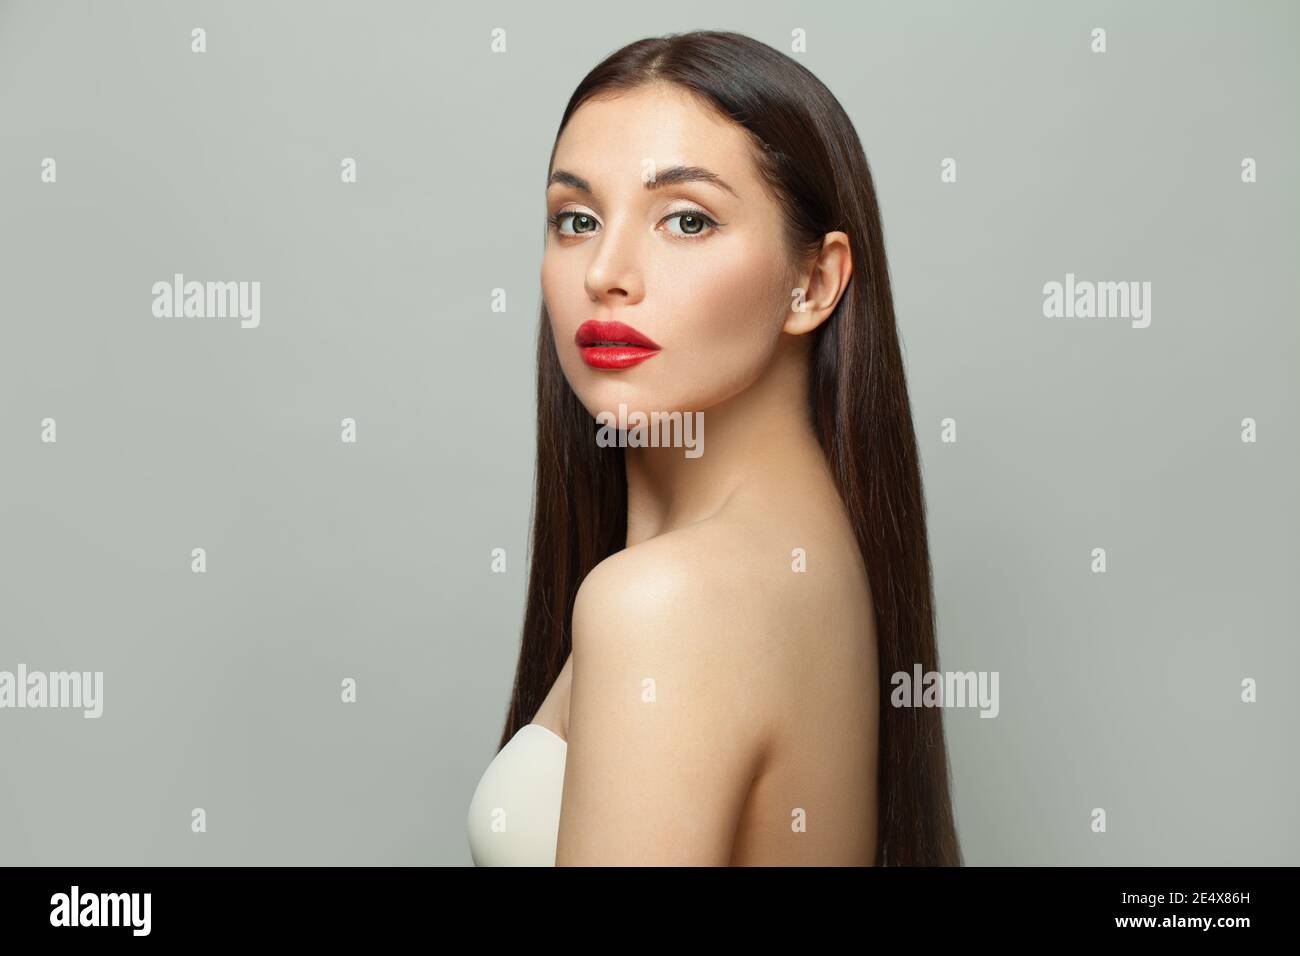 Perfetta Bruna modello moda donna con pelle chiara e lunga capelli lisci sani su sfondo bianco Foto Stock